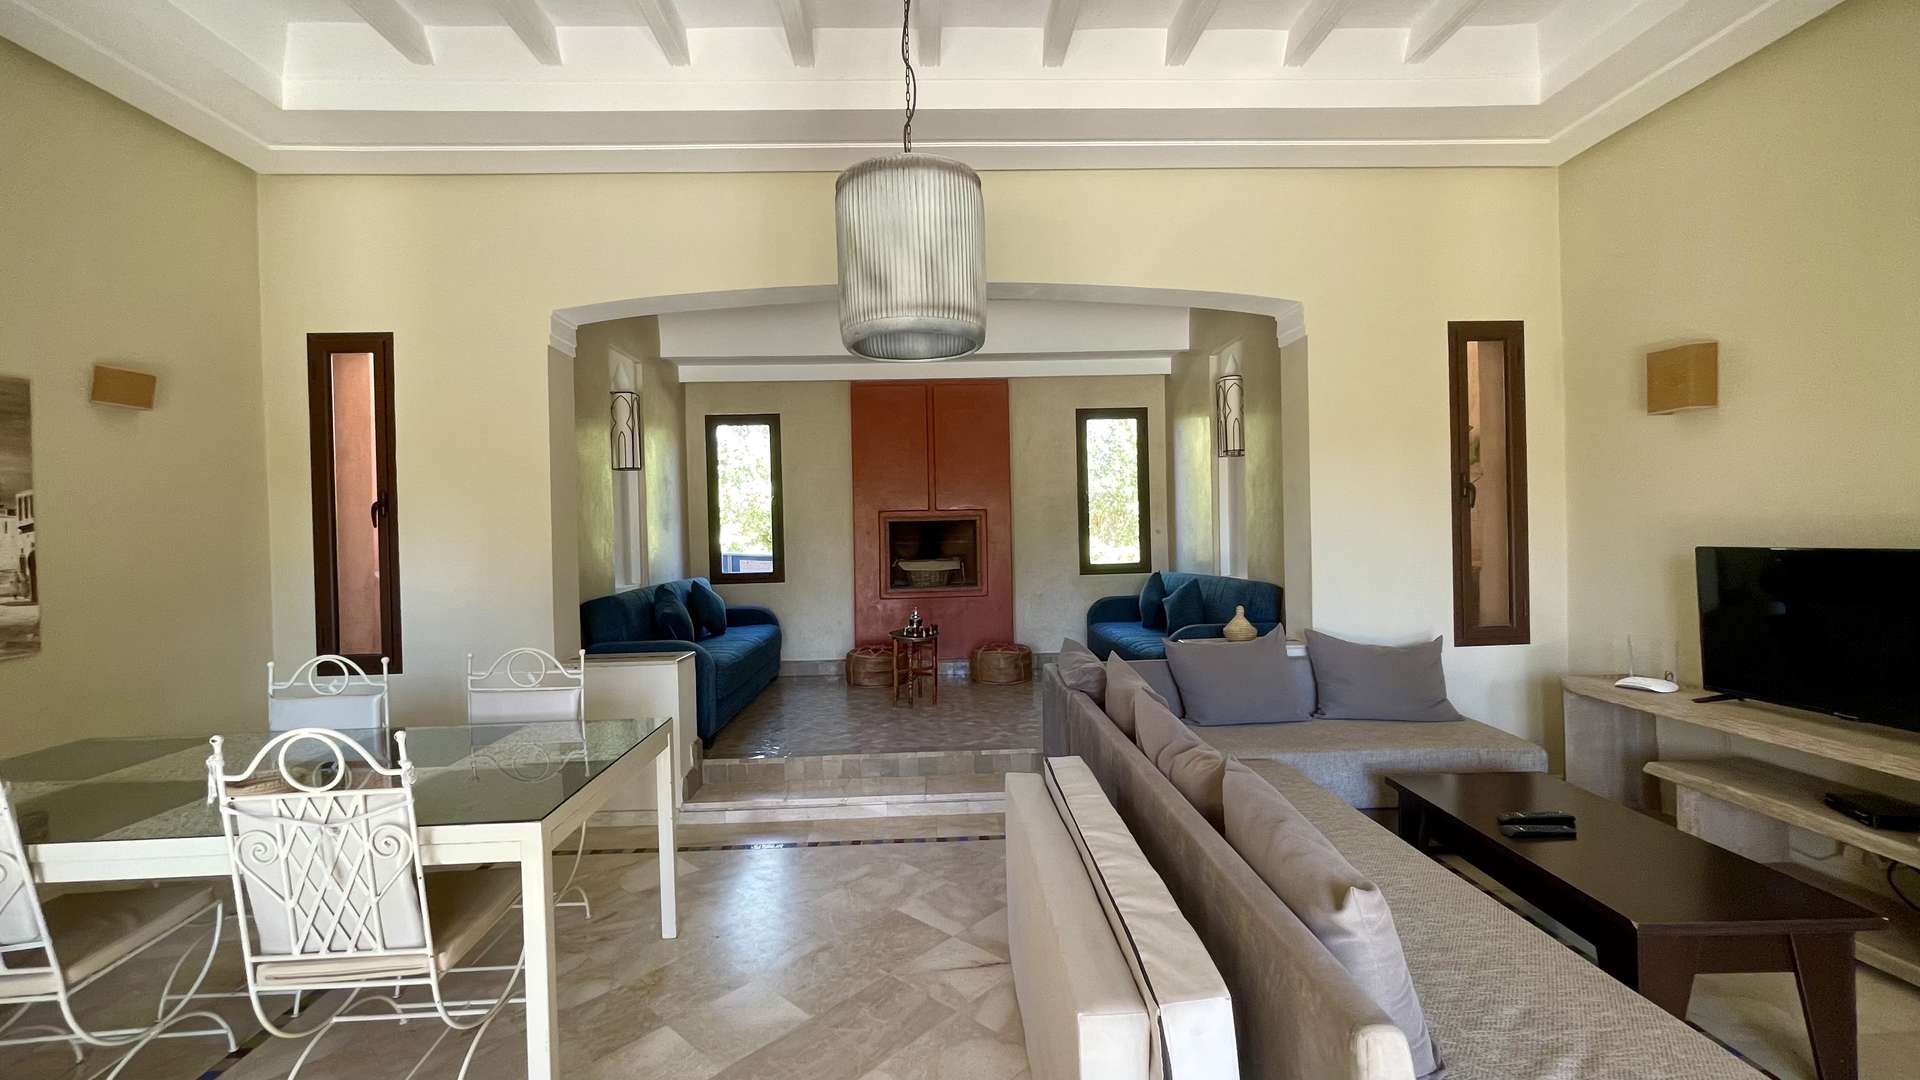 Location de vacances,Villa,Villa isolée 3 chambres à coucher de plain-pieds sur la route de Fès à 20 min. du centre,Marrakech,Route de Fès